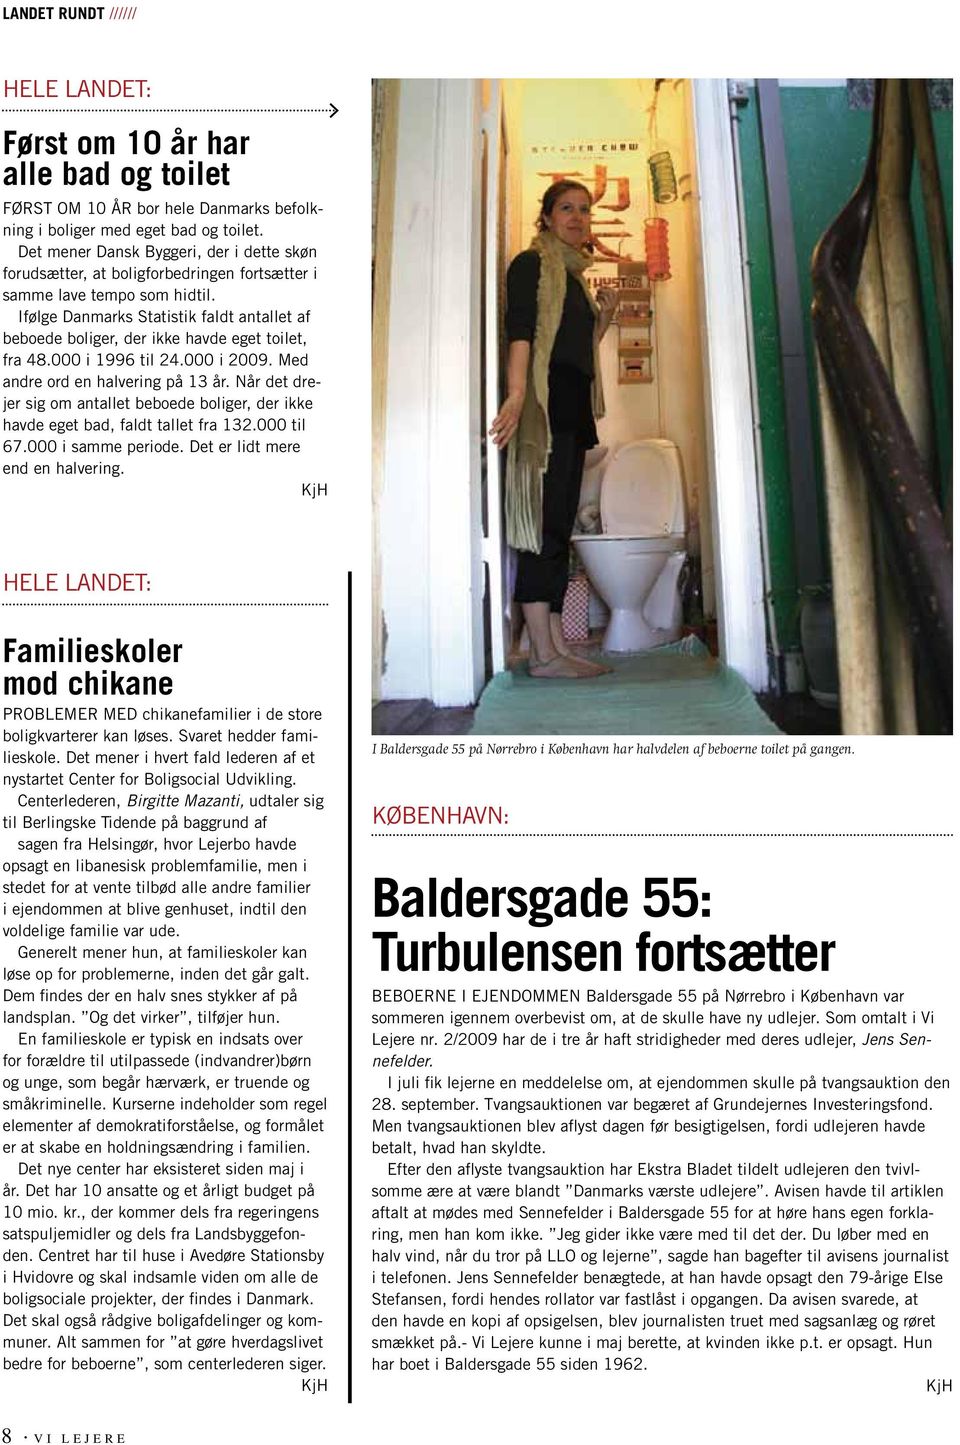 Ifølge Danmarks Statistik faldt antallet af beboede boliger, der ikke havde eget toilet, fra 48.000 i 1996 til 24.000 i 2009. Med andre ord en halvering på 13 år.